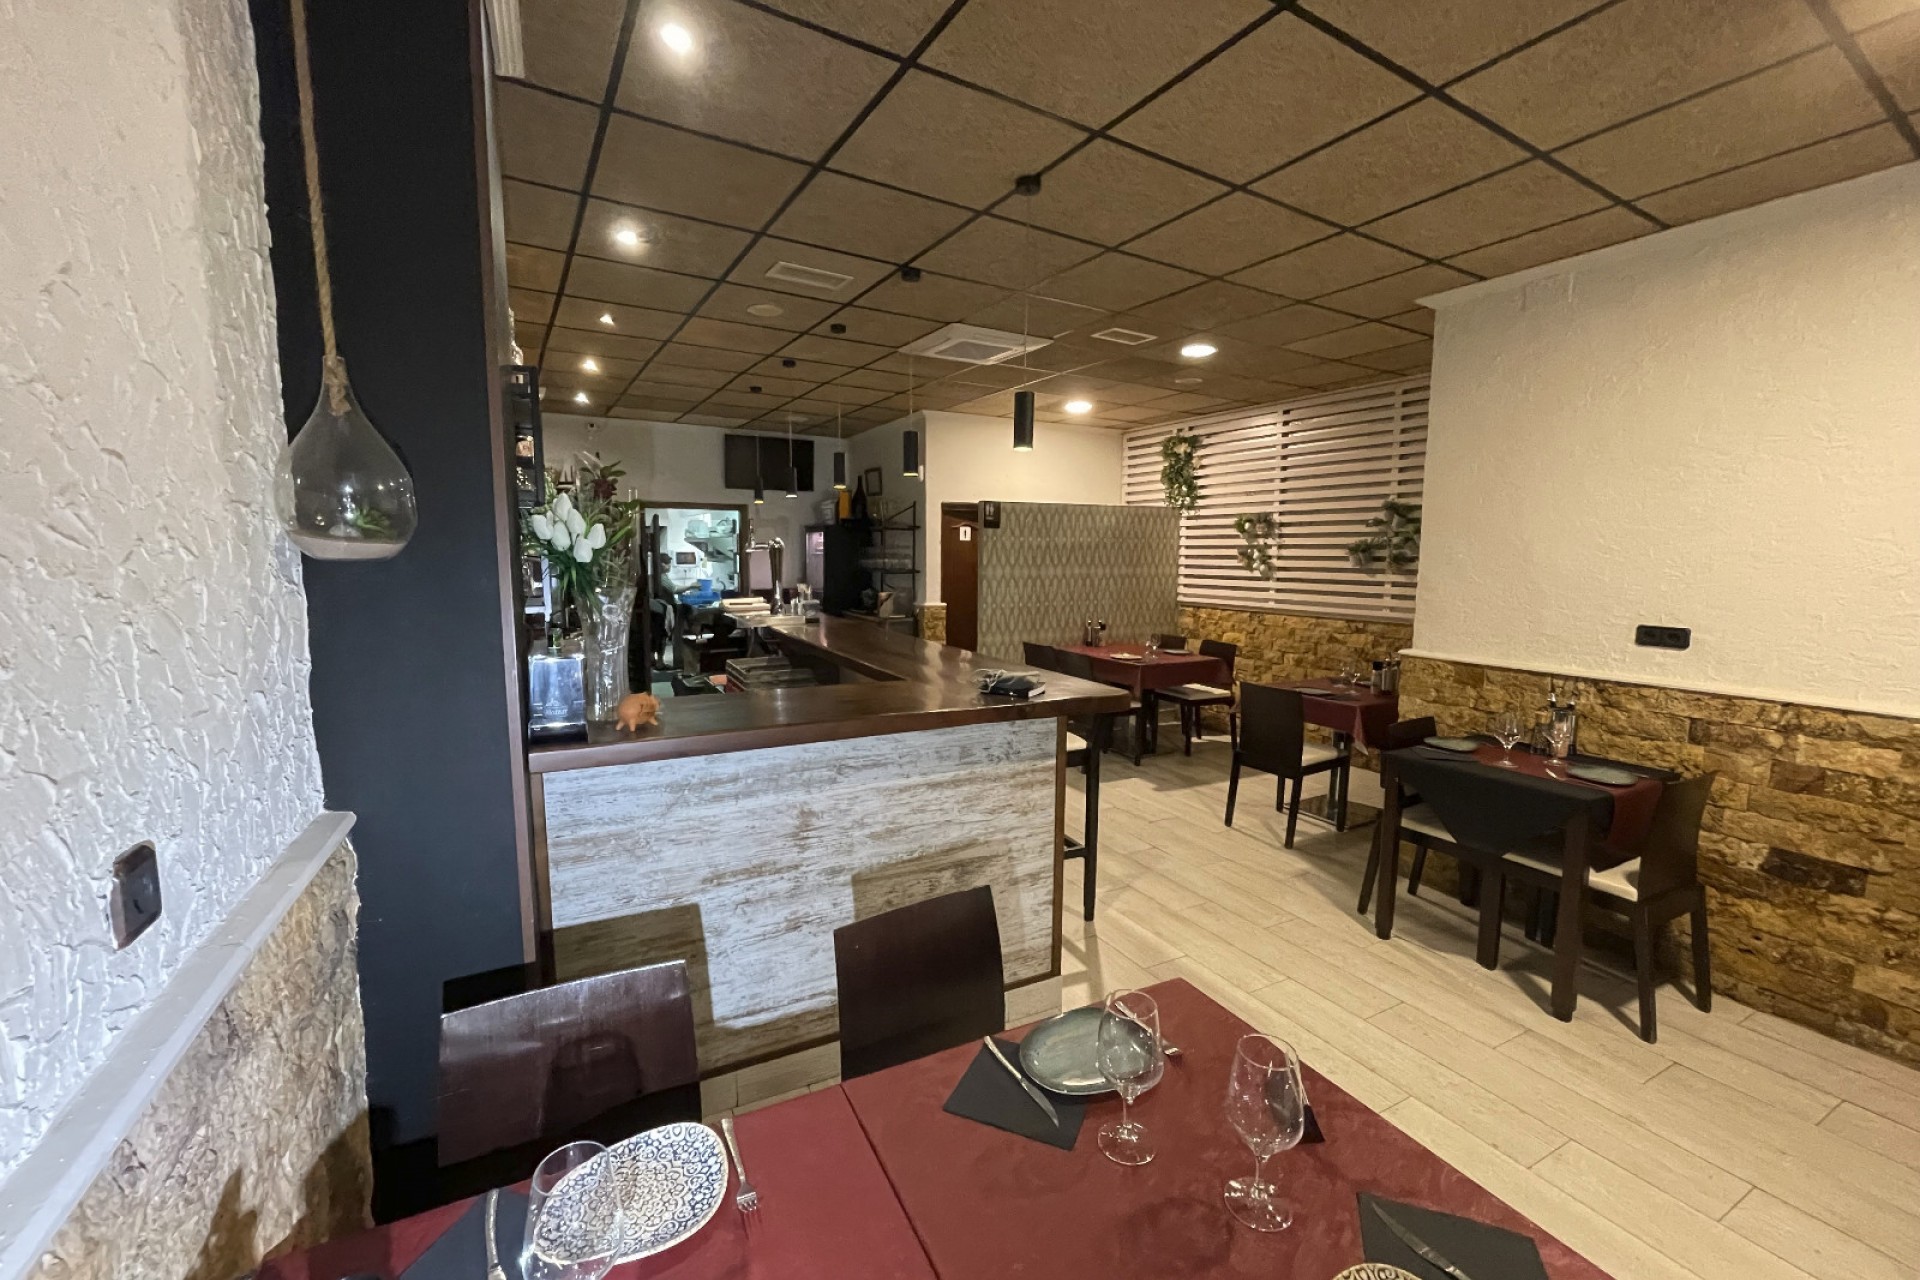 Reventa - Cafe, restaurant -
Benijofar - Centro